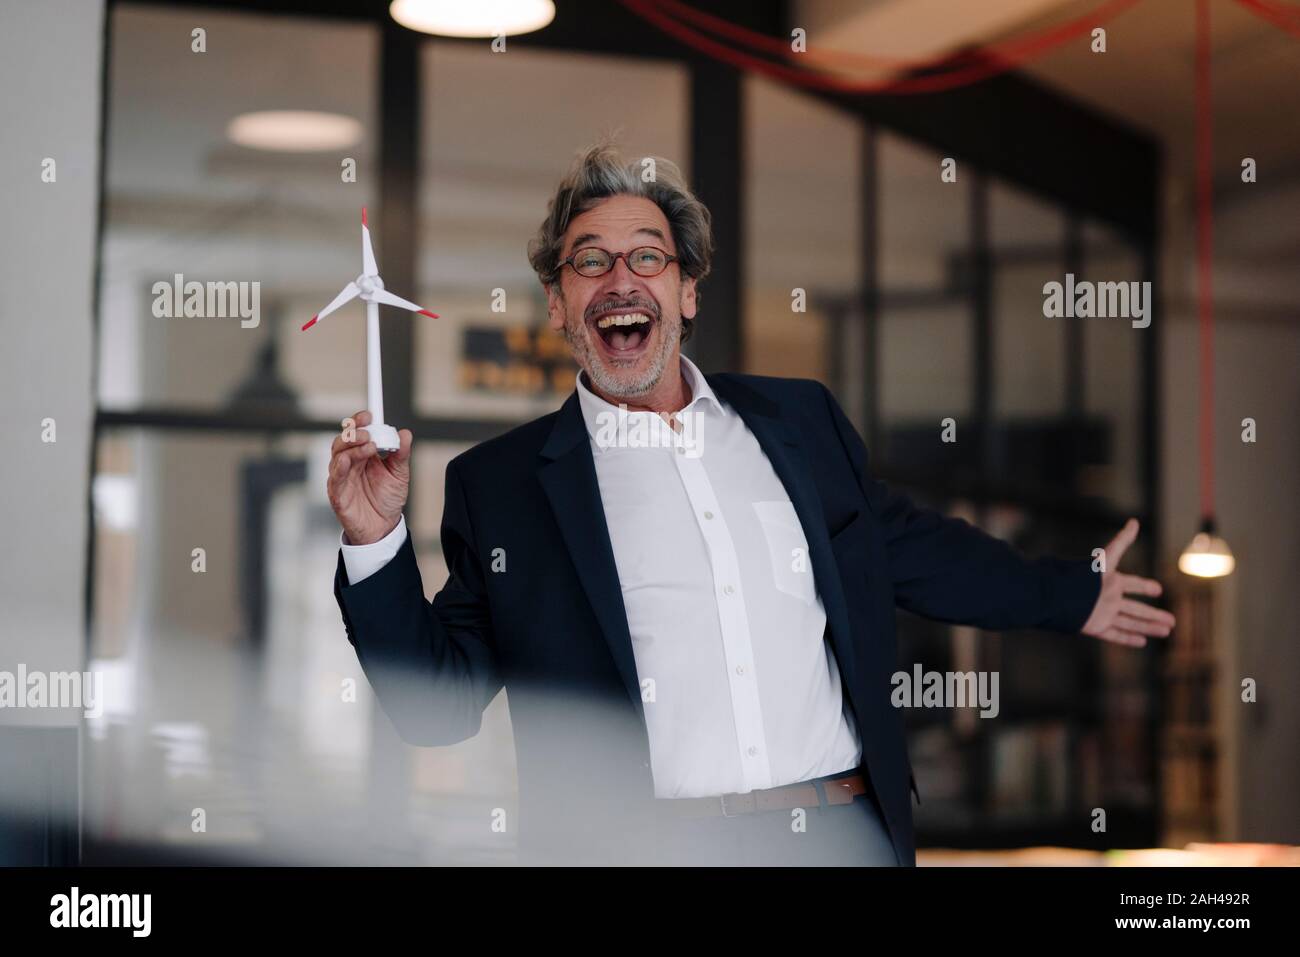 Heureux senior businessman with wind turbine modèle de l'office de tourisme Banque D'Images